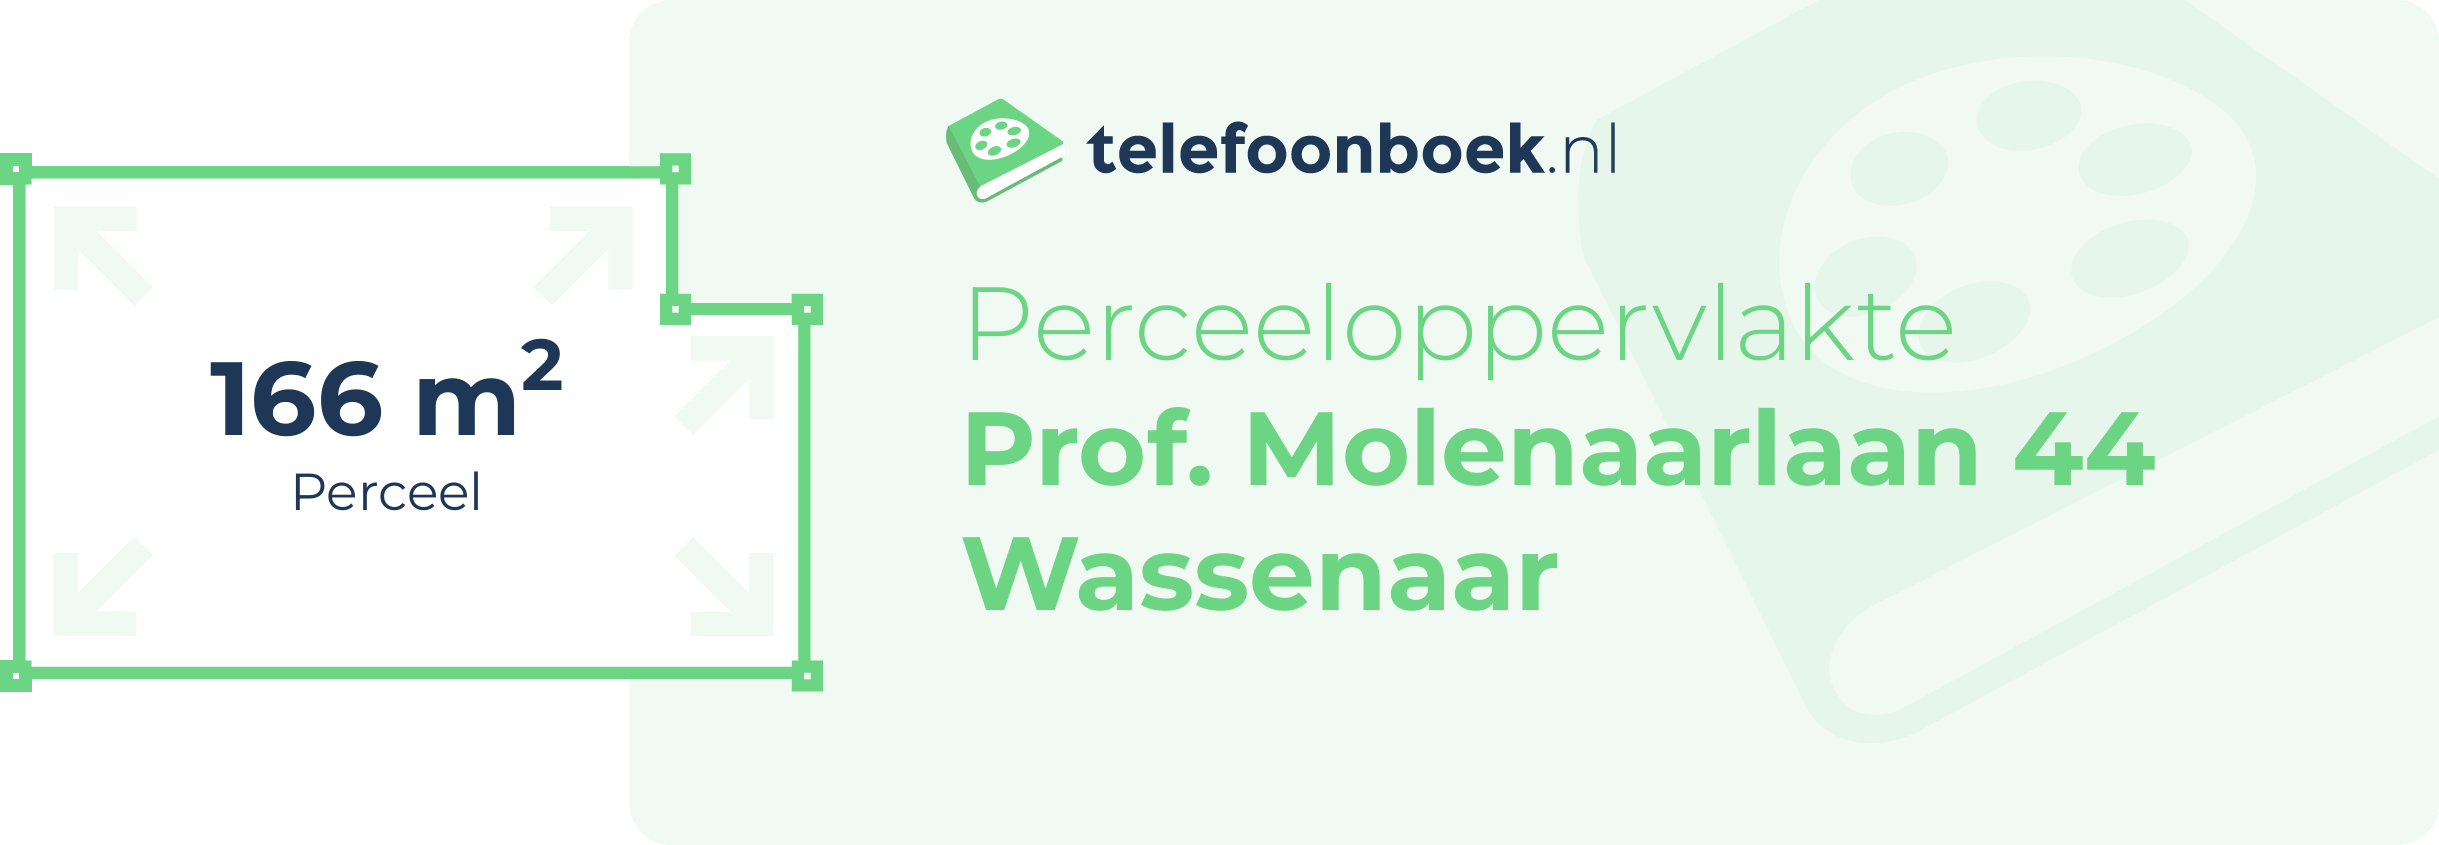 Perceeloppervlakte Prof. Molenaarlaan 44 Wassenaar